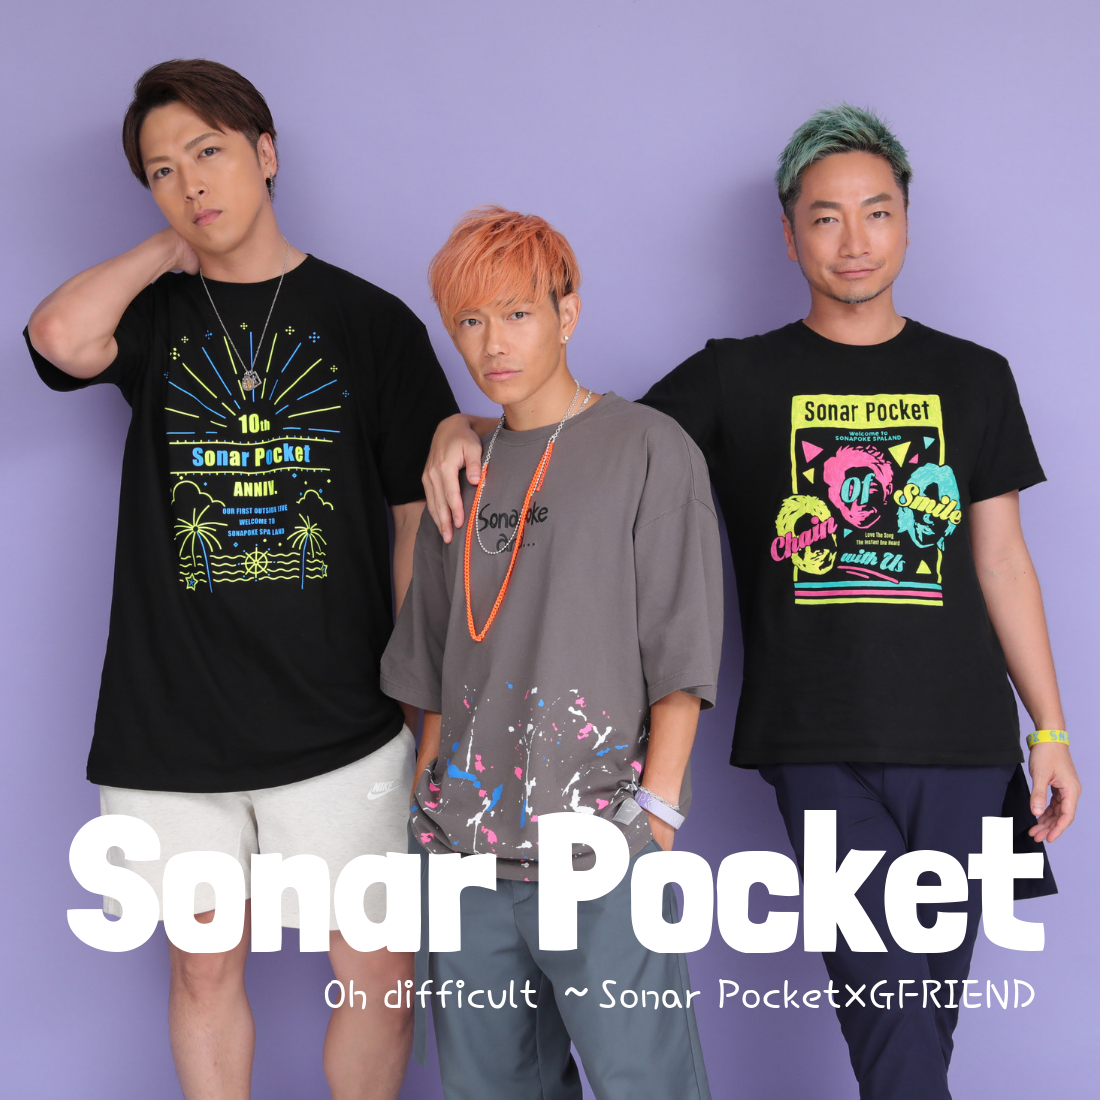 Sonar Pocket 初のコラボ楽曲 Oh Difficult Sonar Pocket Gfriend インタビュー 日刊ケリー